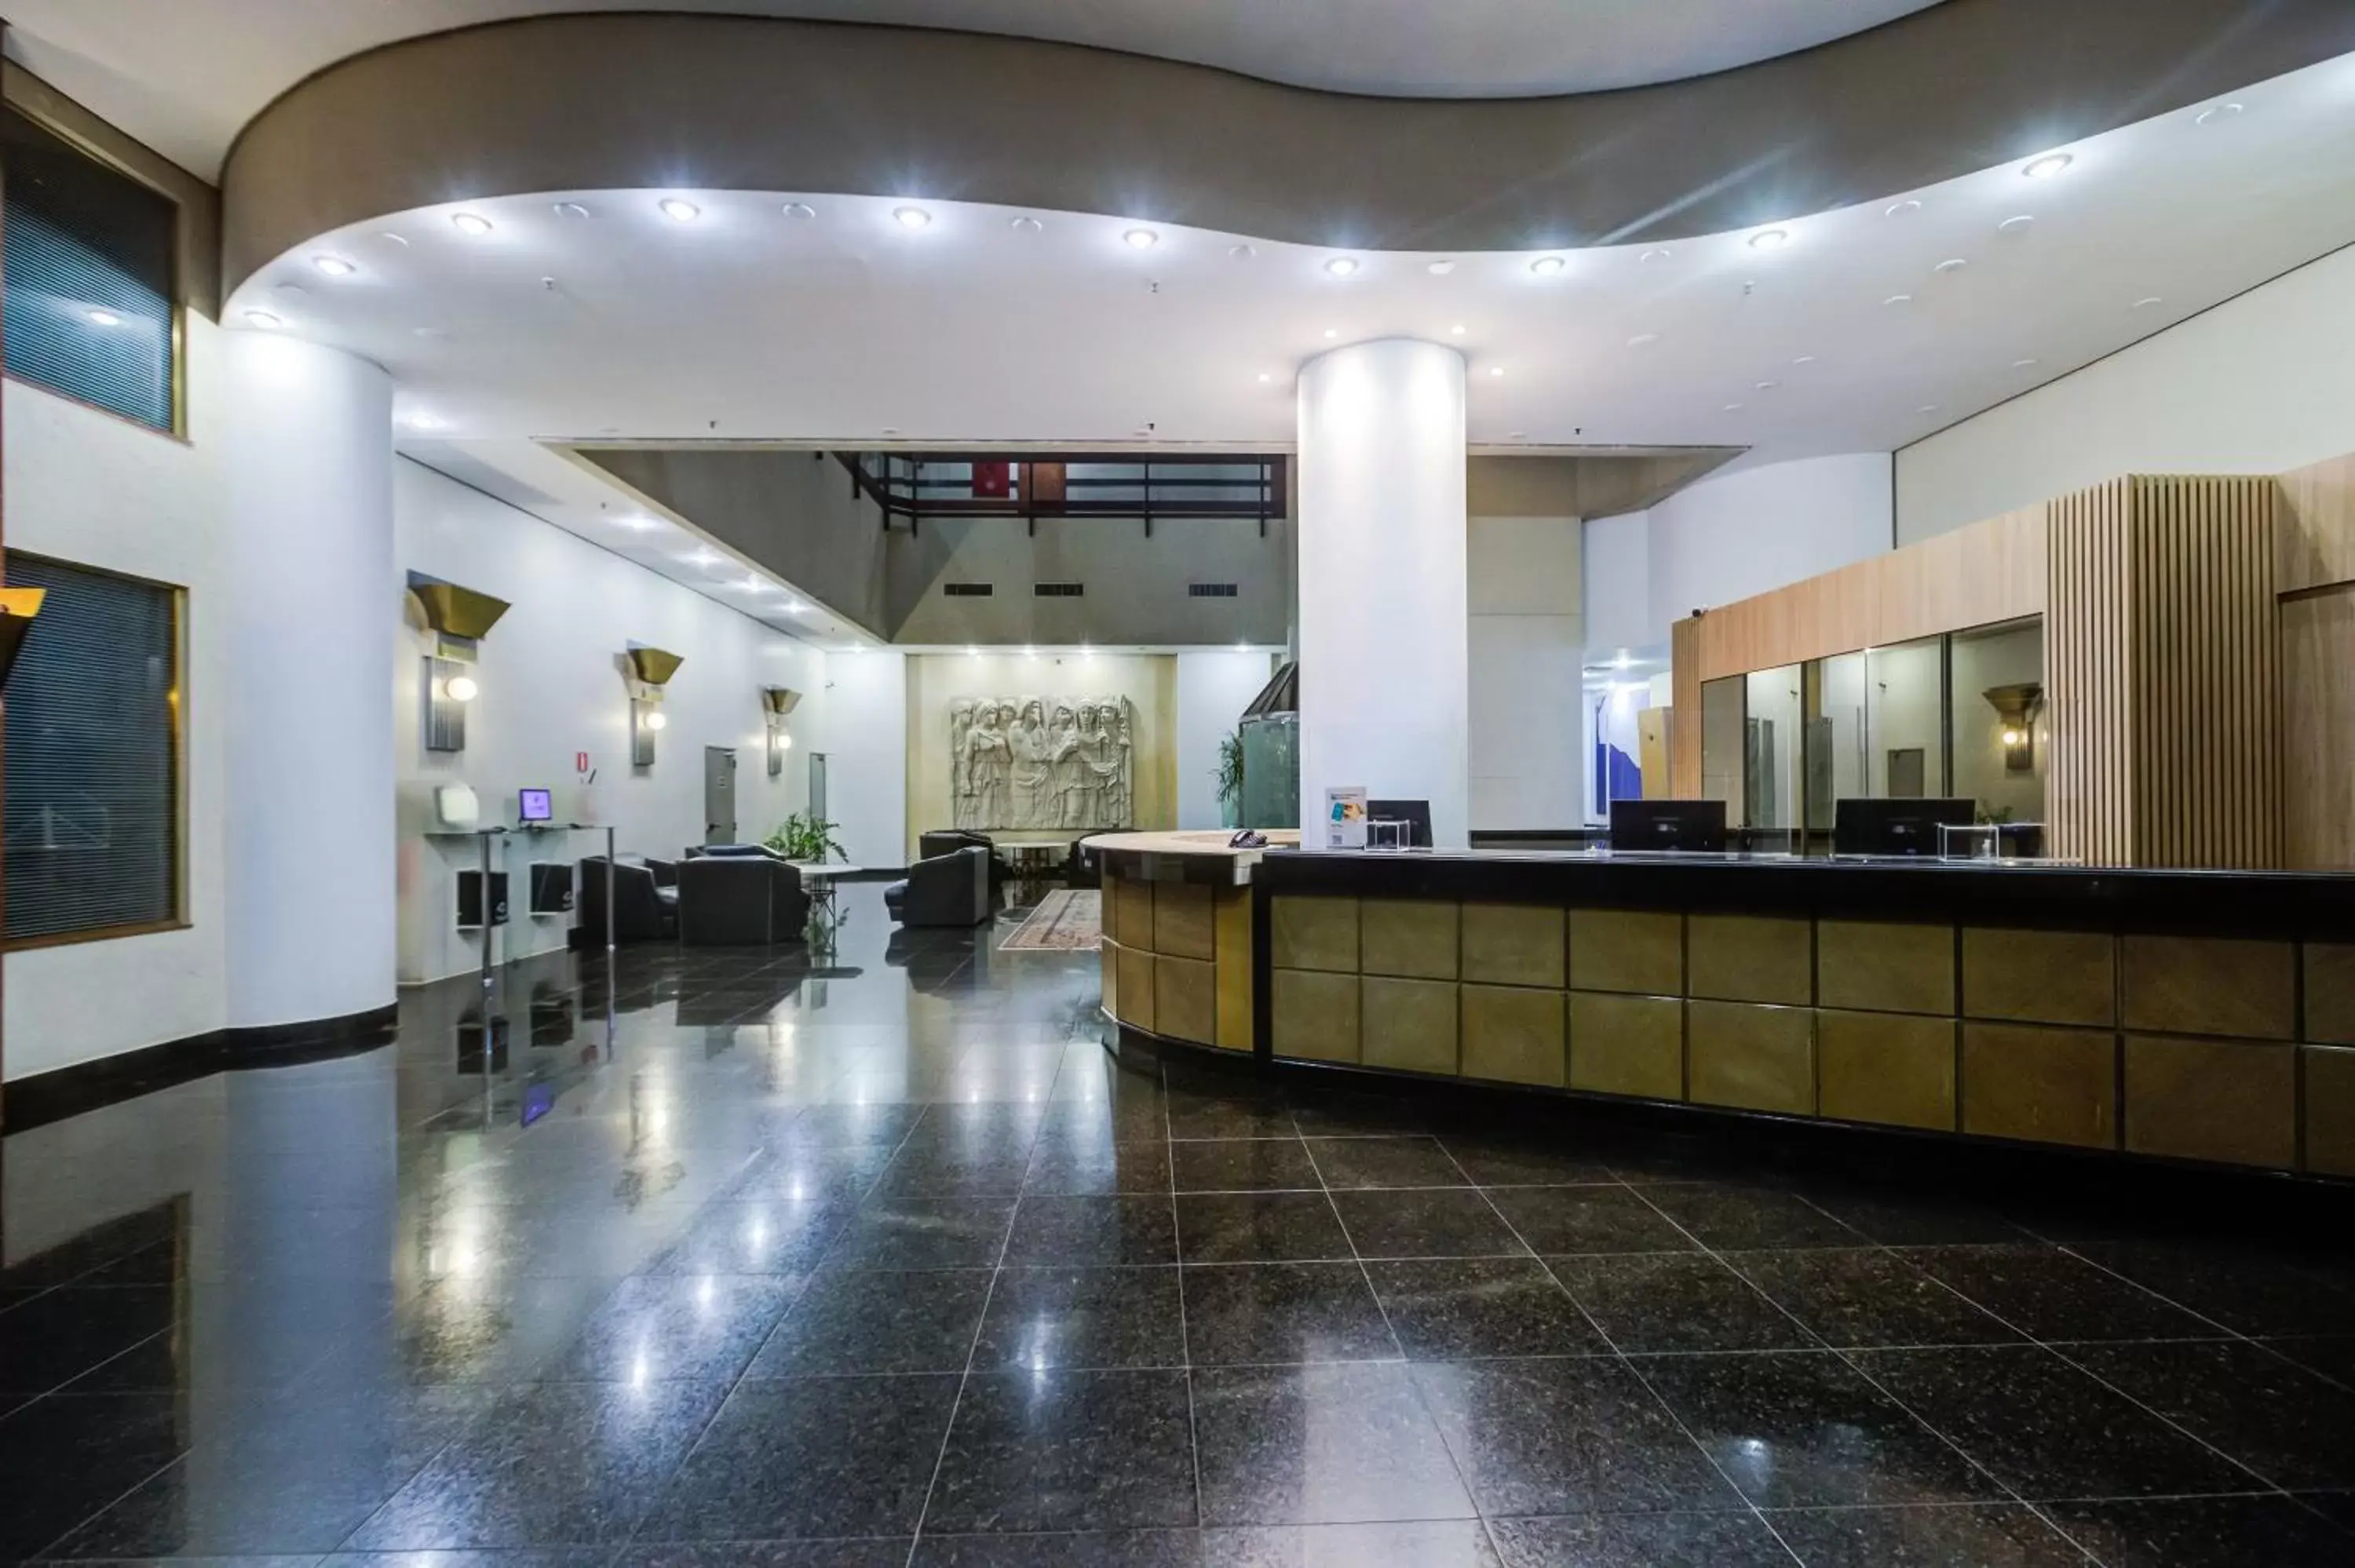 Lobby or reception, Lobby/Reception in Slaviero Londrina Flat